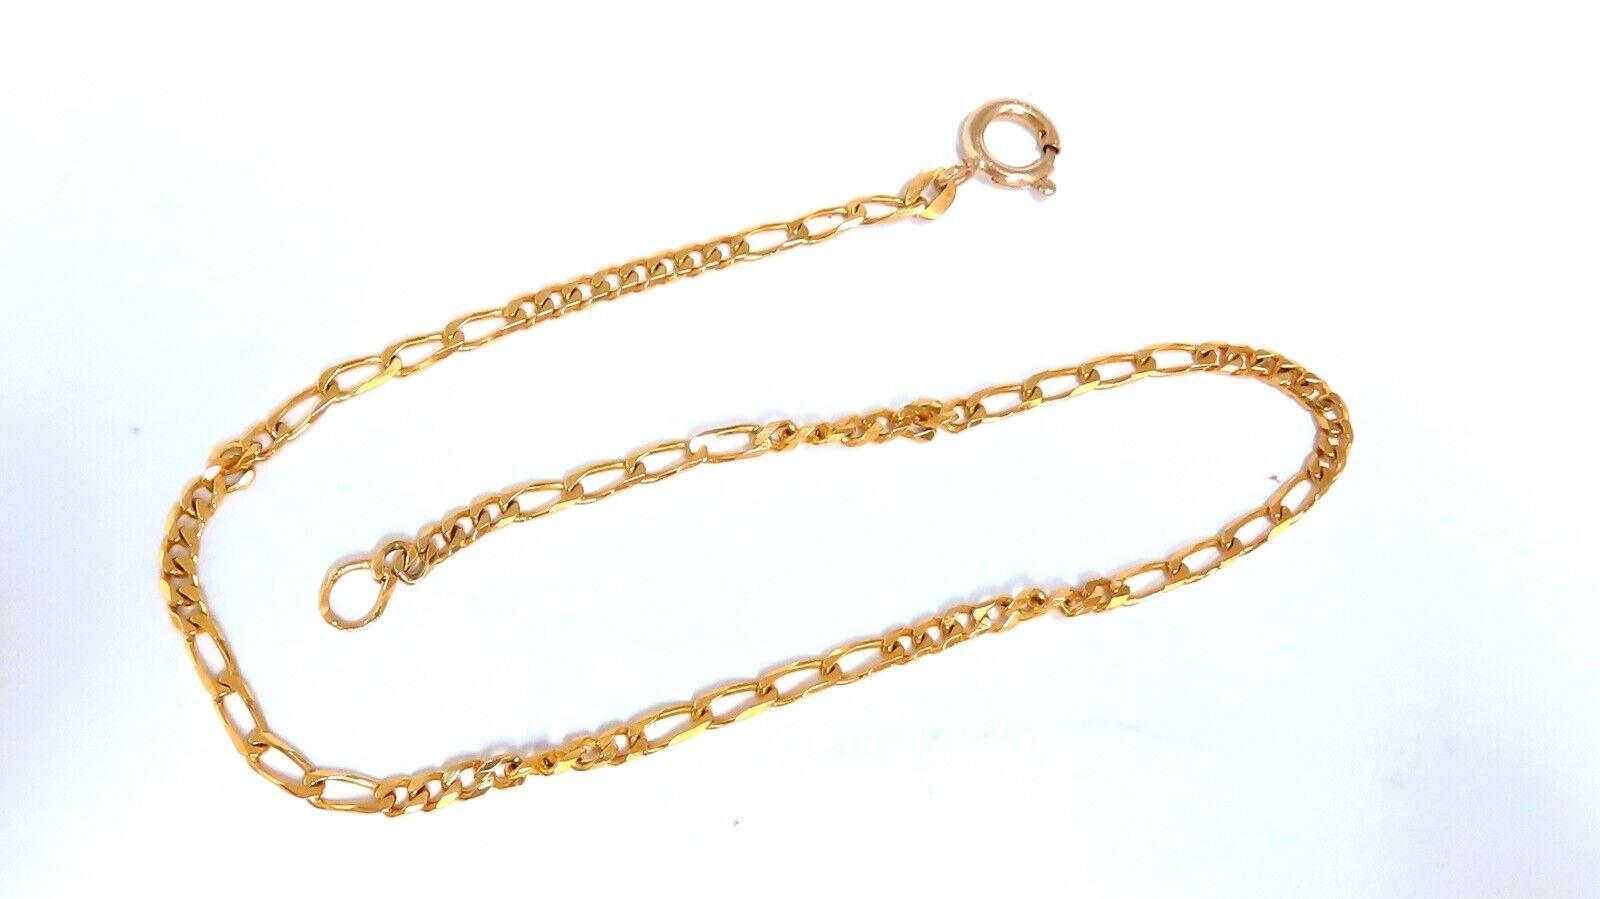 2.5 mm Figaro-Armband

Groß und hoch, 10 Zoll oder kann als Fußkettchen getragen werden

14 Karat Gelbgold

4.9 g